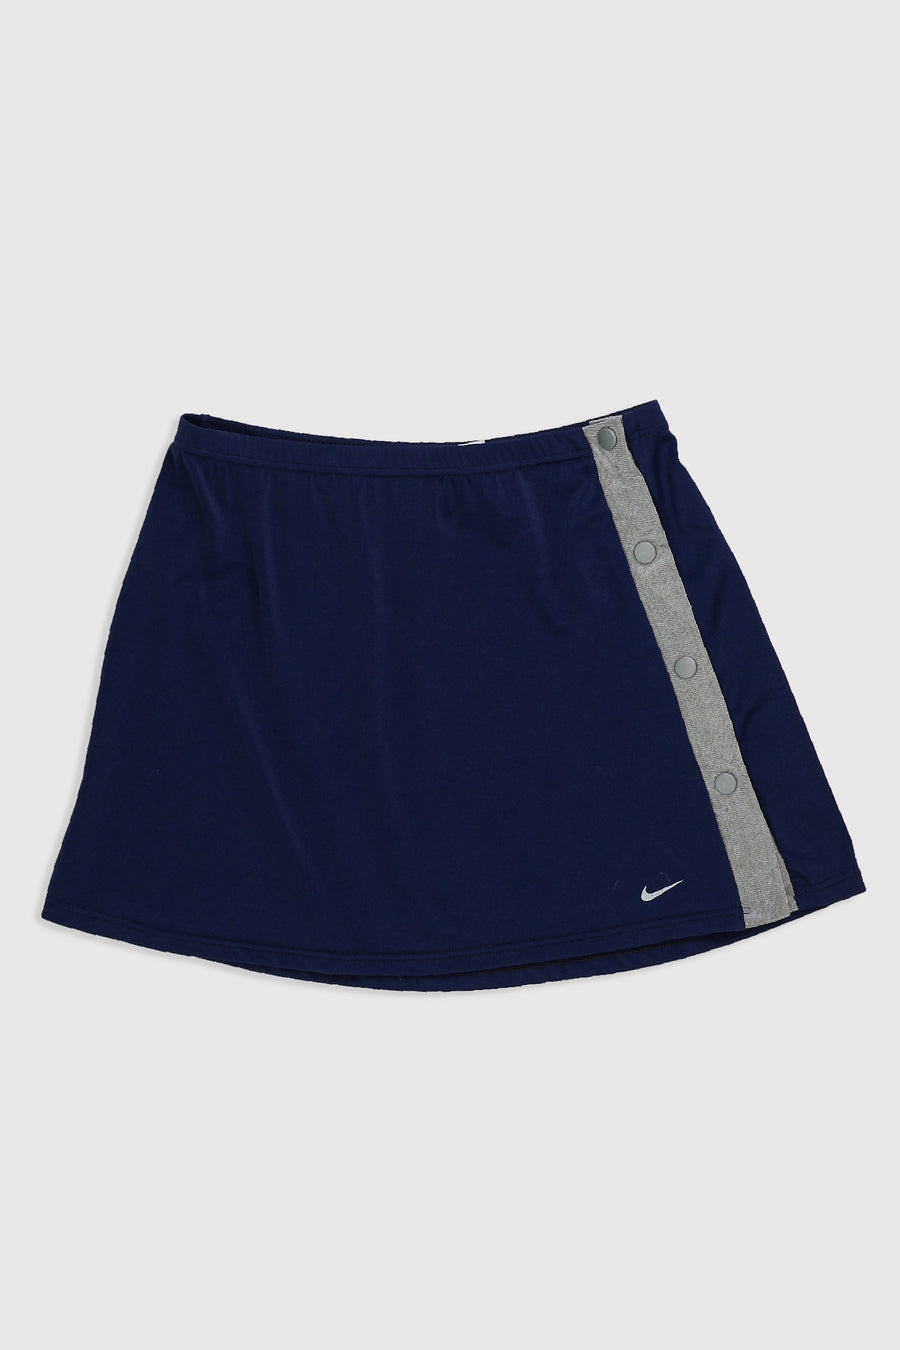 Vintage Nike Tearaway Tennis Skirt